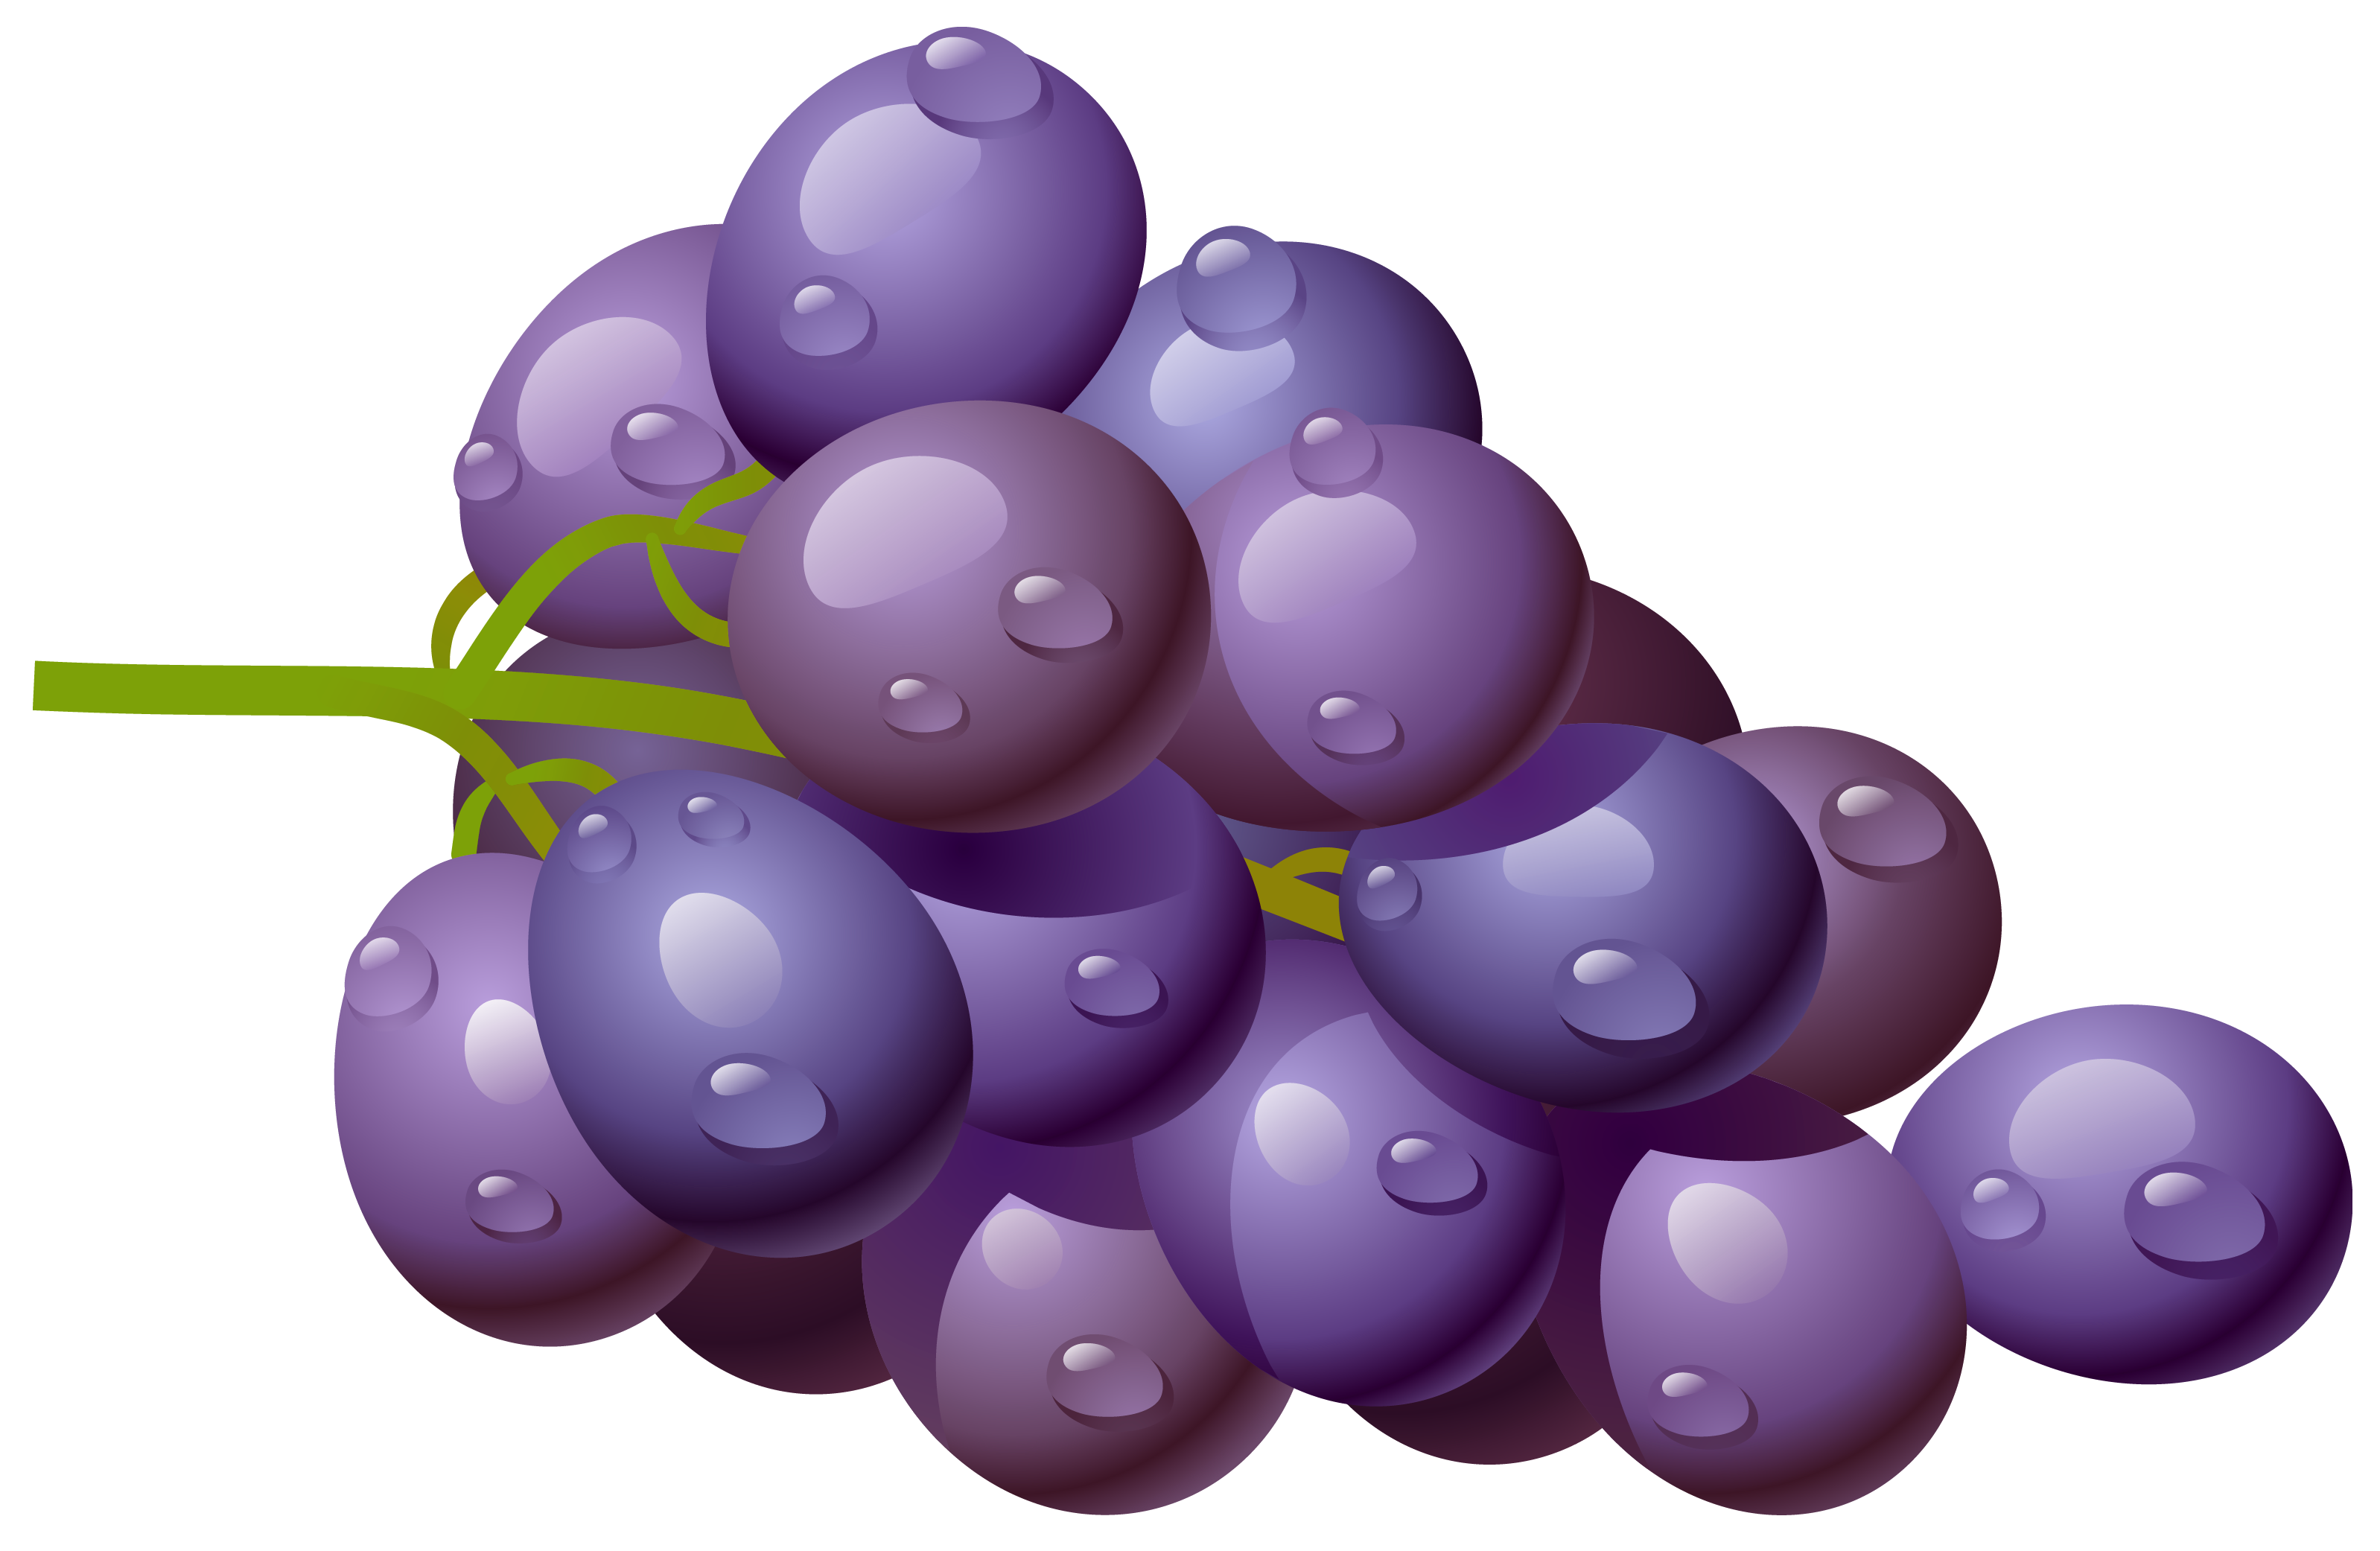 Grapes clip art at vector clip art image 